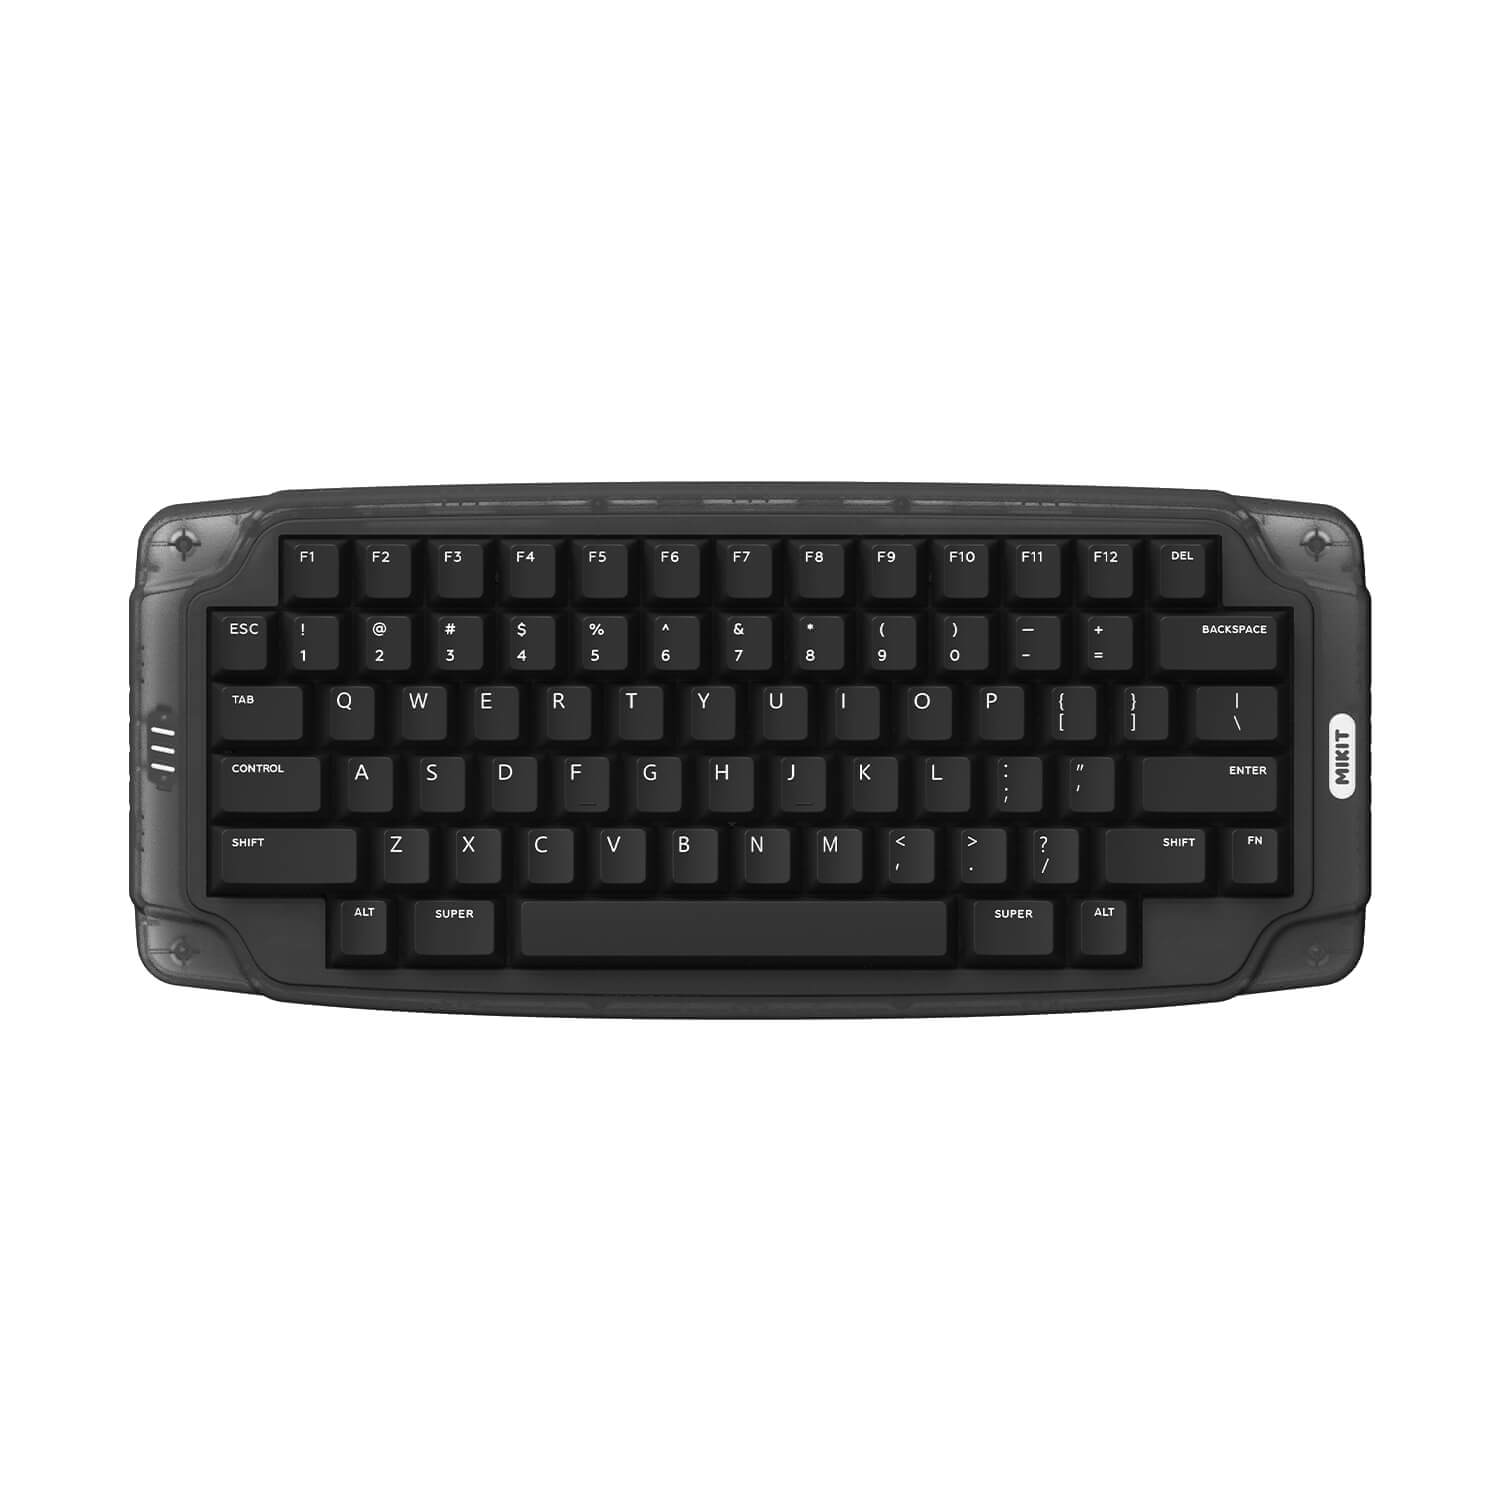 MIKIT M72 Keyboard wireless gaming keyboard